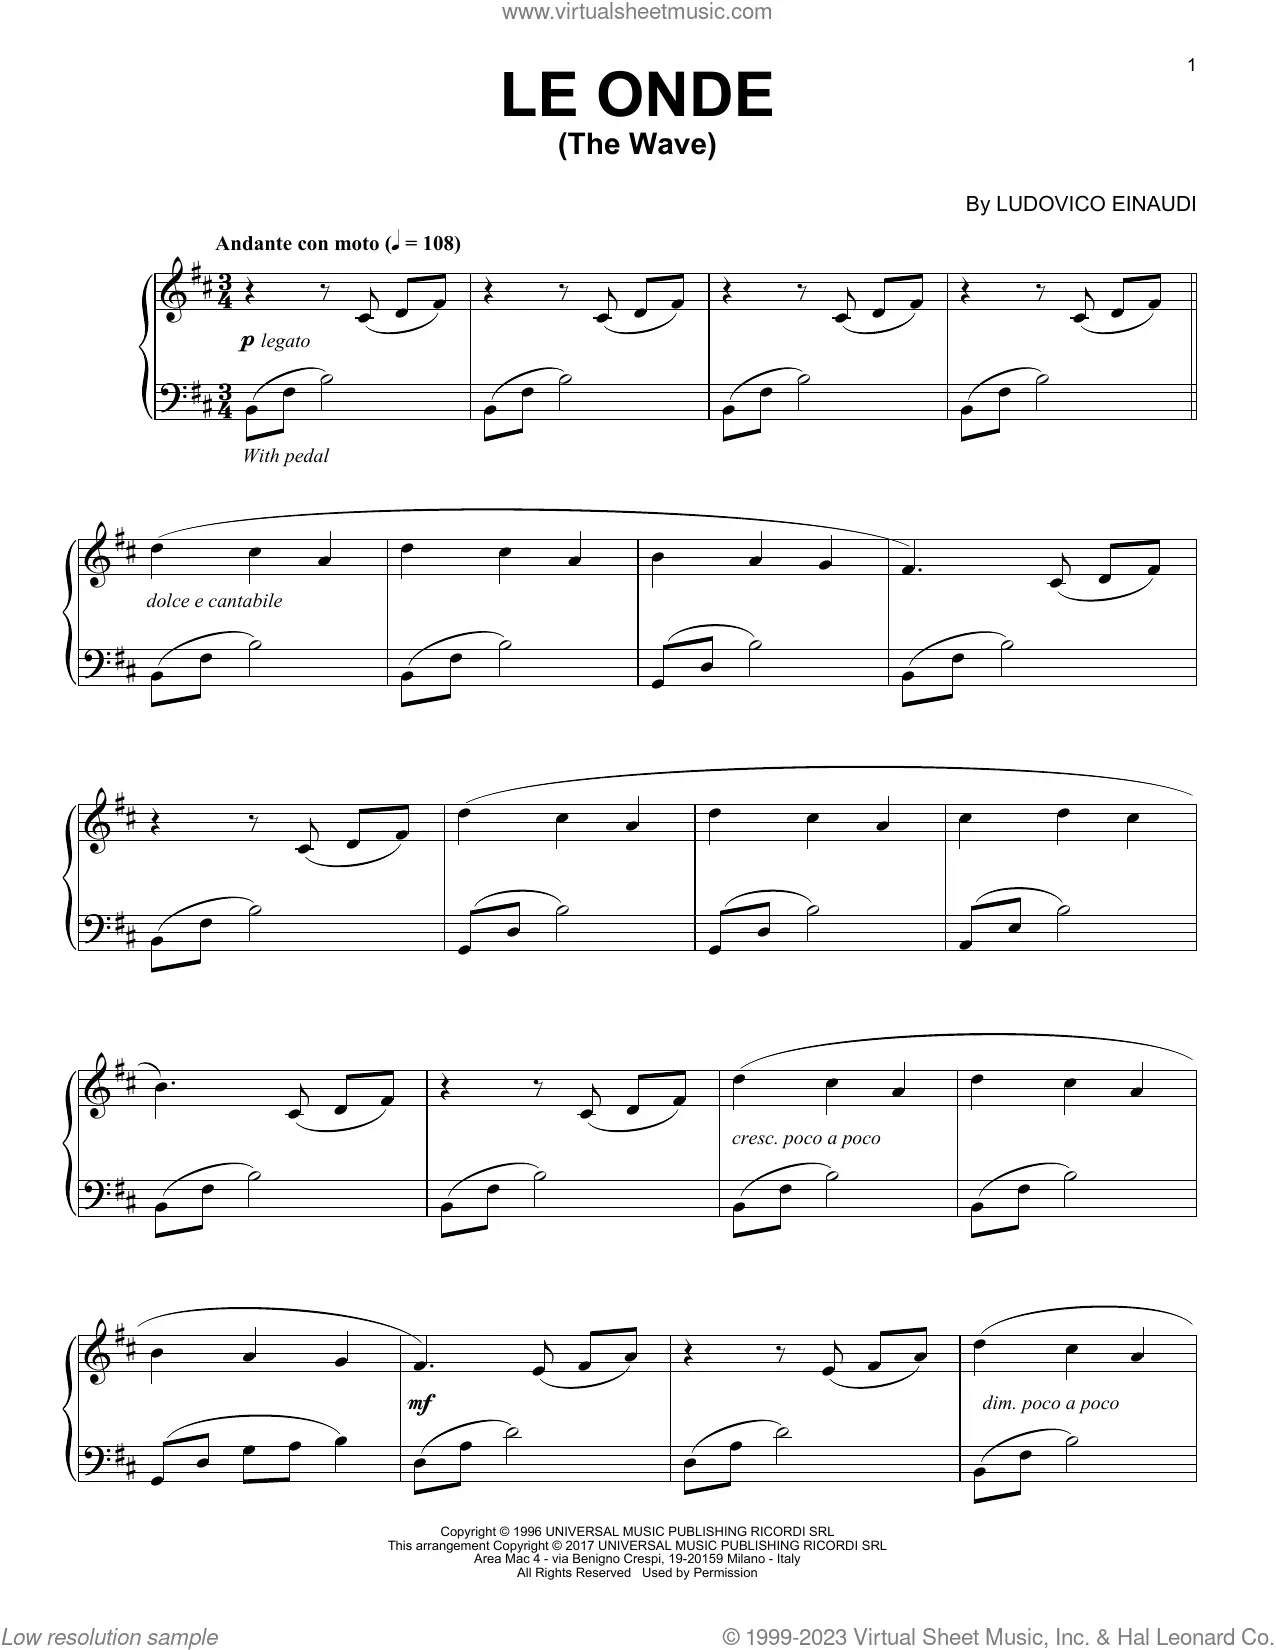 Partition Ludovico Einaudi Andare notes de piano, téléchargement numérique,  PDF imprimable, facile à jouer, feuille de musique PDF imprimable numérique  -  France